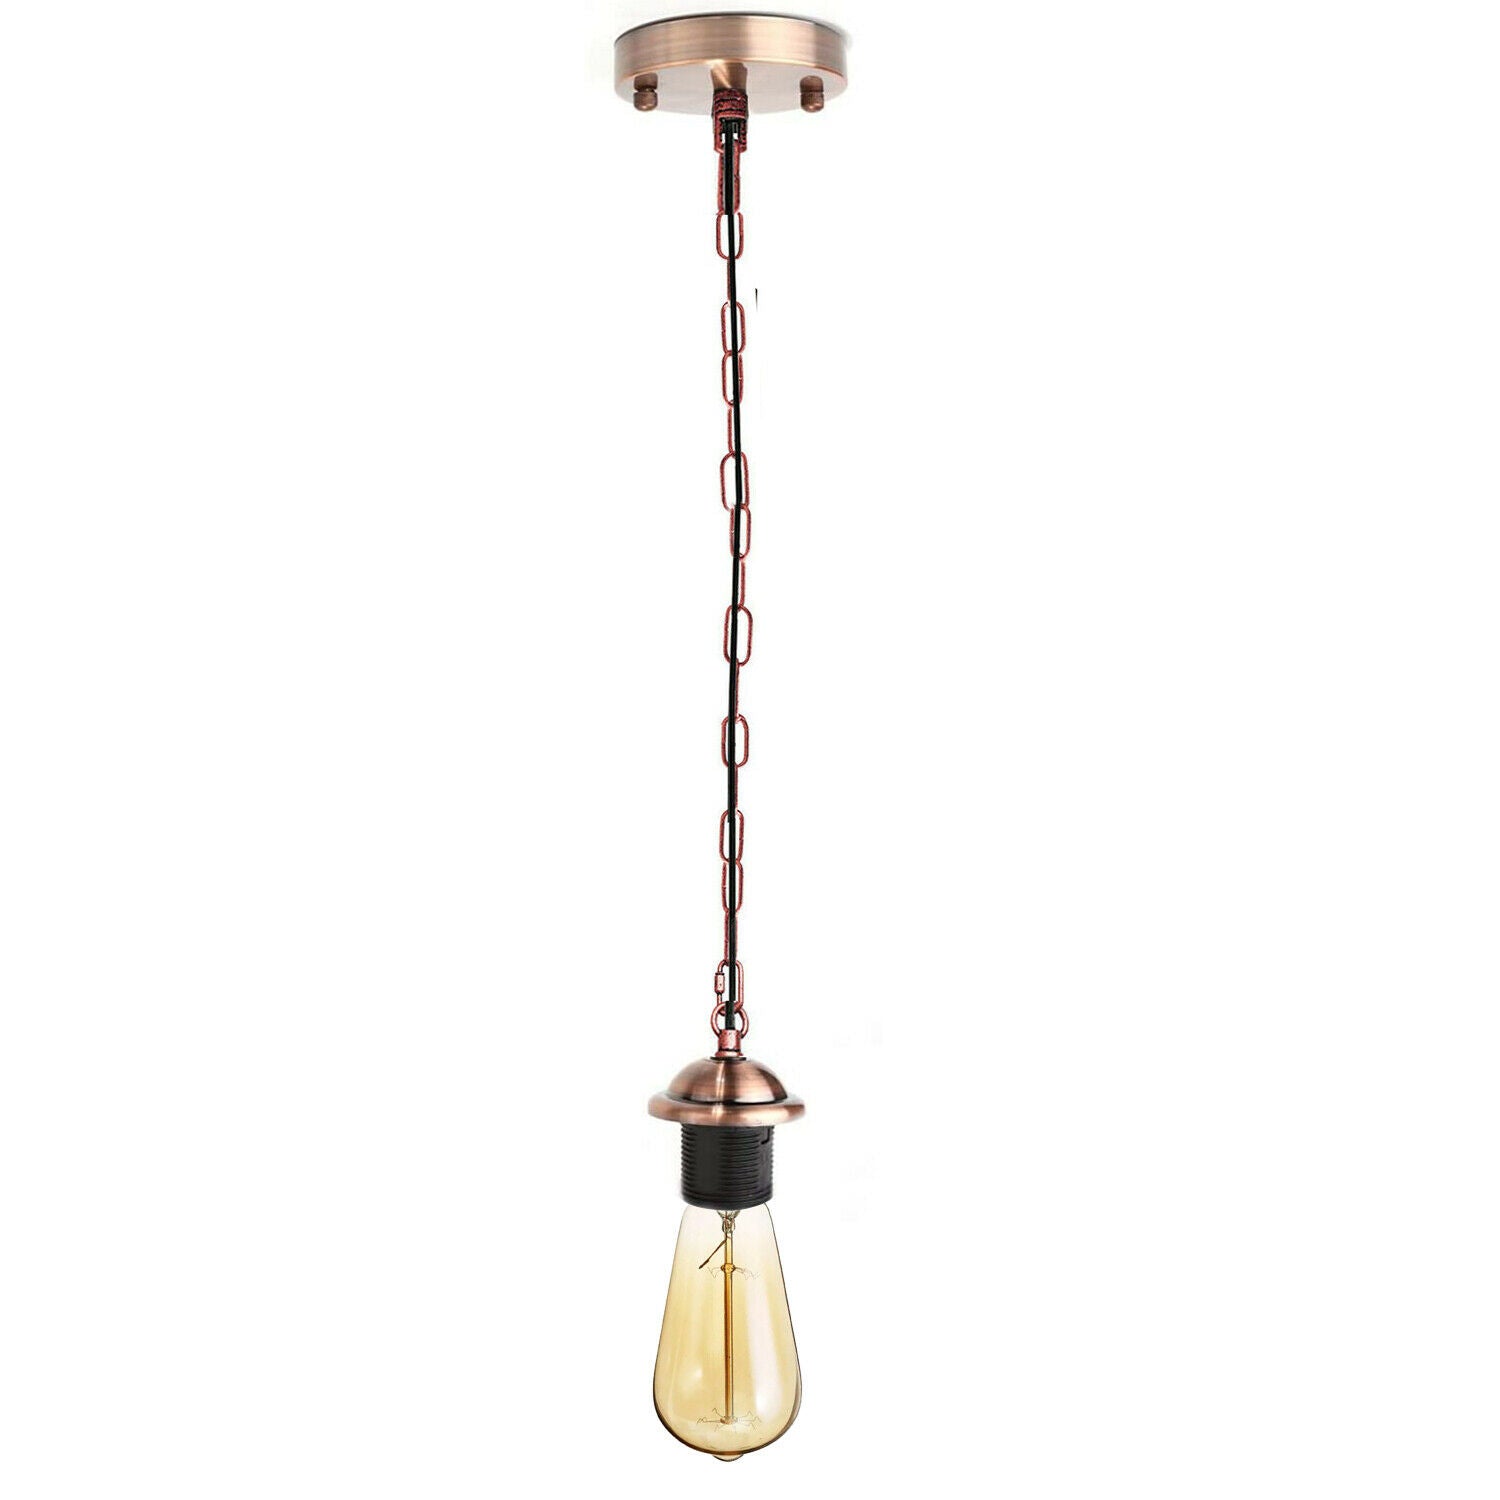 Copper Metal Ceiing E27 Lamp Holder Pendant Light With Chain~1776 - LEDSone UK Ltd